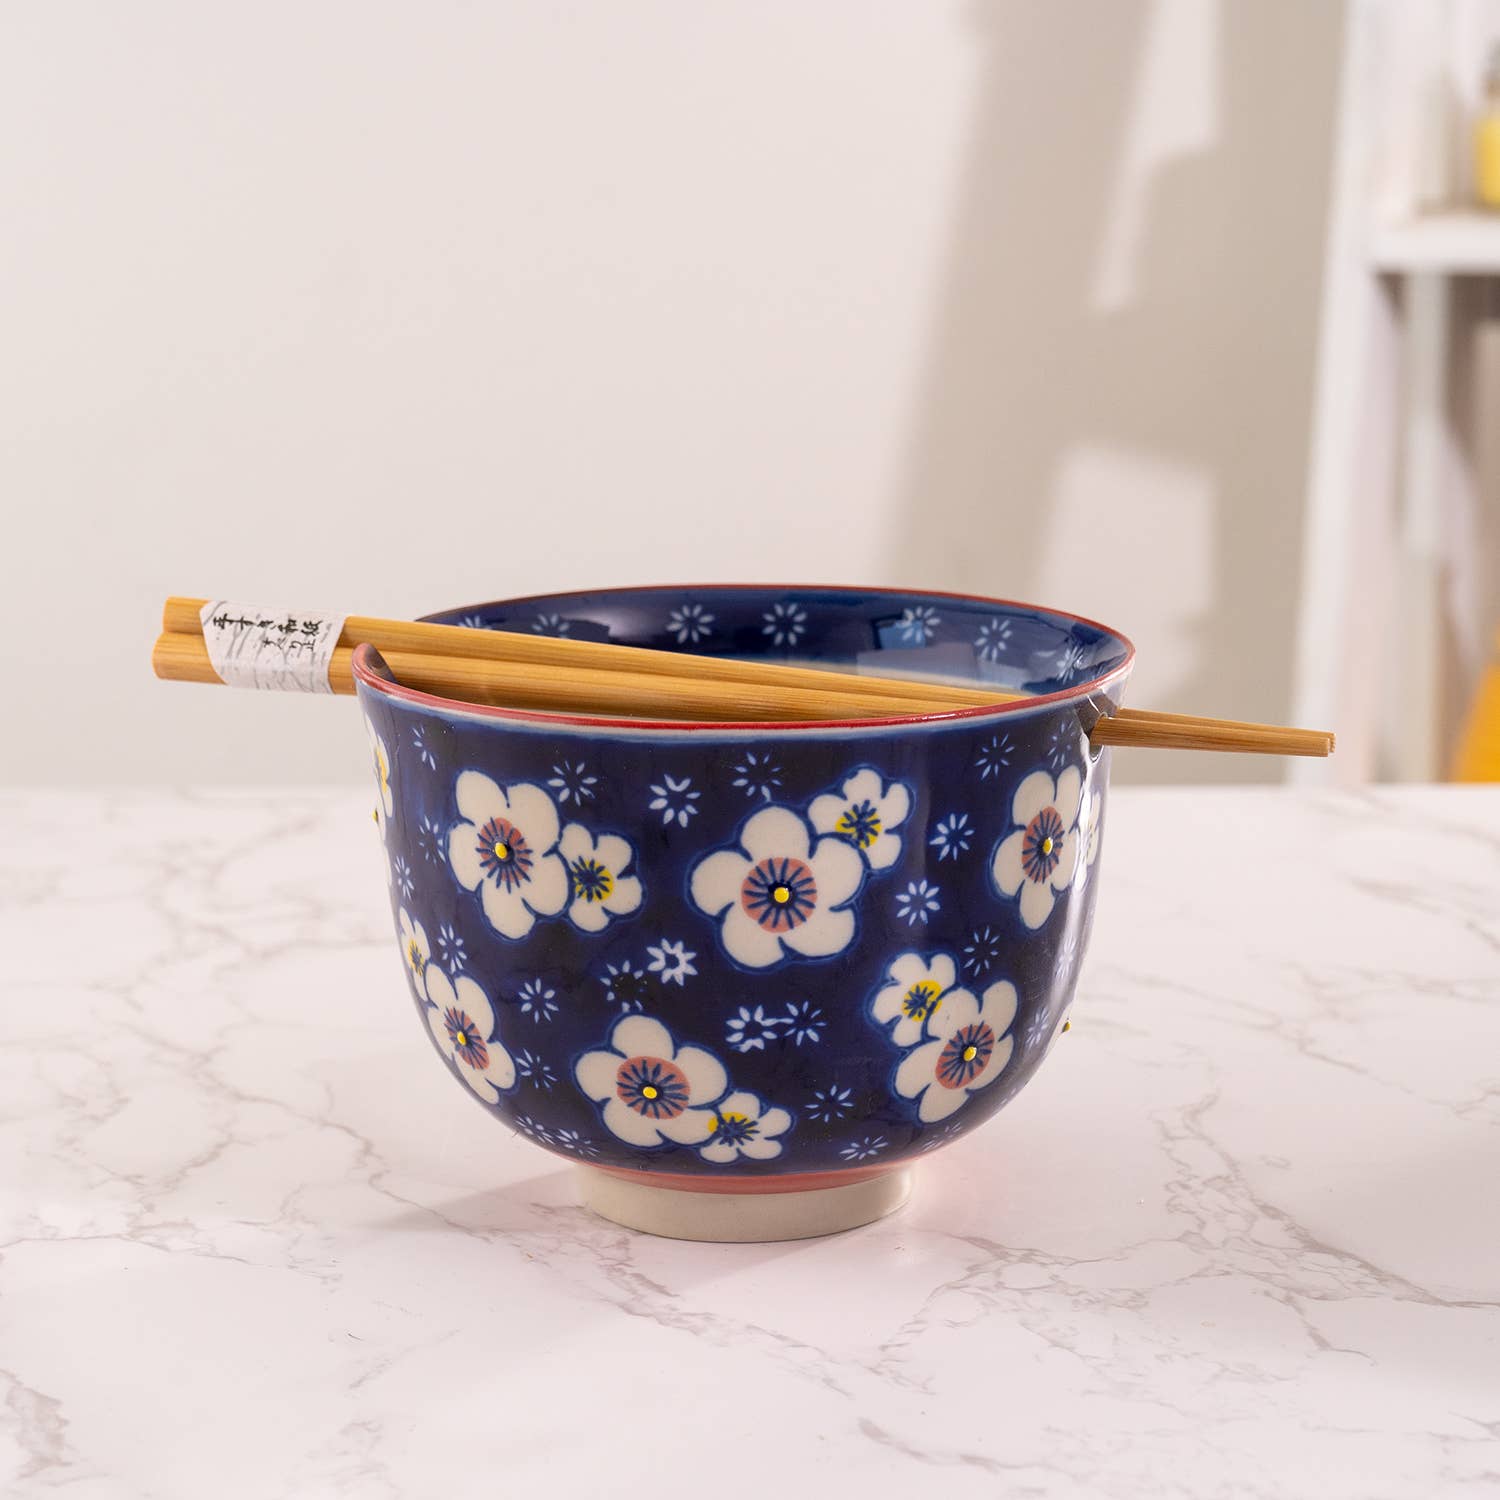 Ume Plum Bowl With Chopsticks Set